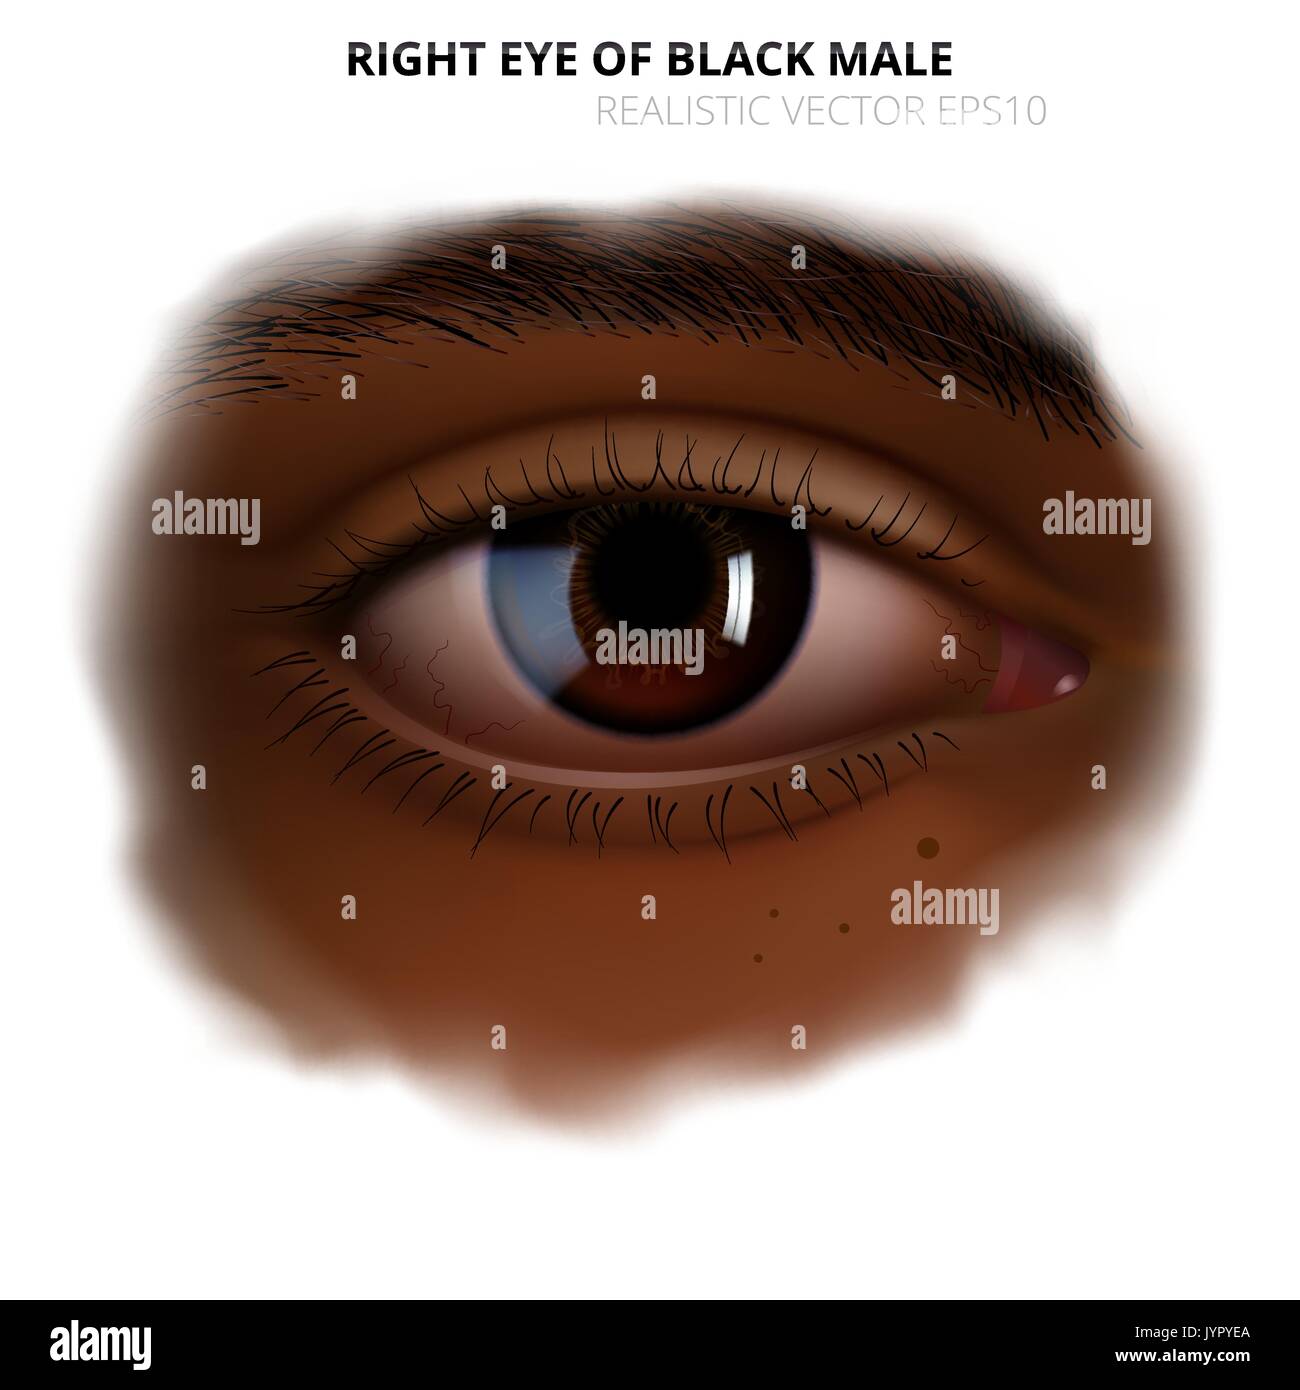 Realistico occhio umano. Dettagliata occhio destro di adulto nero donna o uomo con una lucida iride marrone. La pelle scura del volto con una offuscata bordo trasparente. Illustrazione Vettoriale